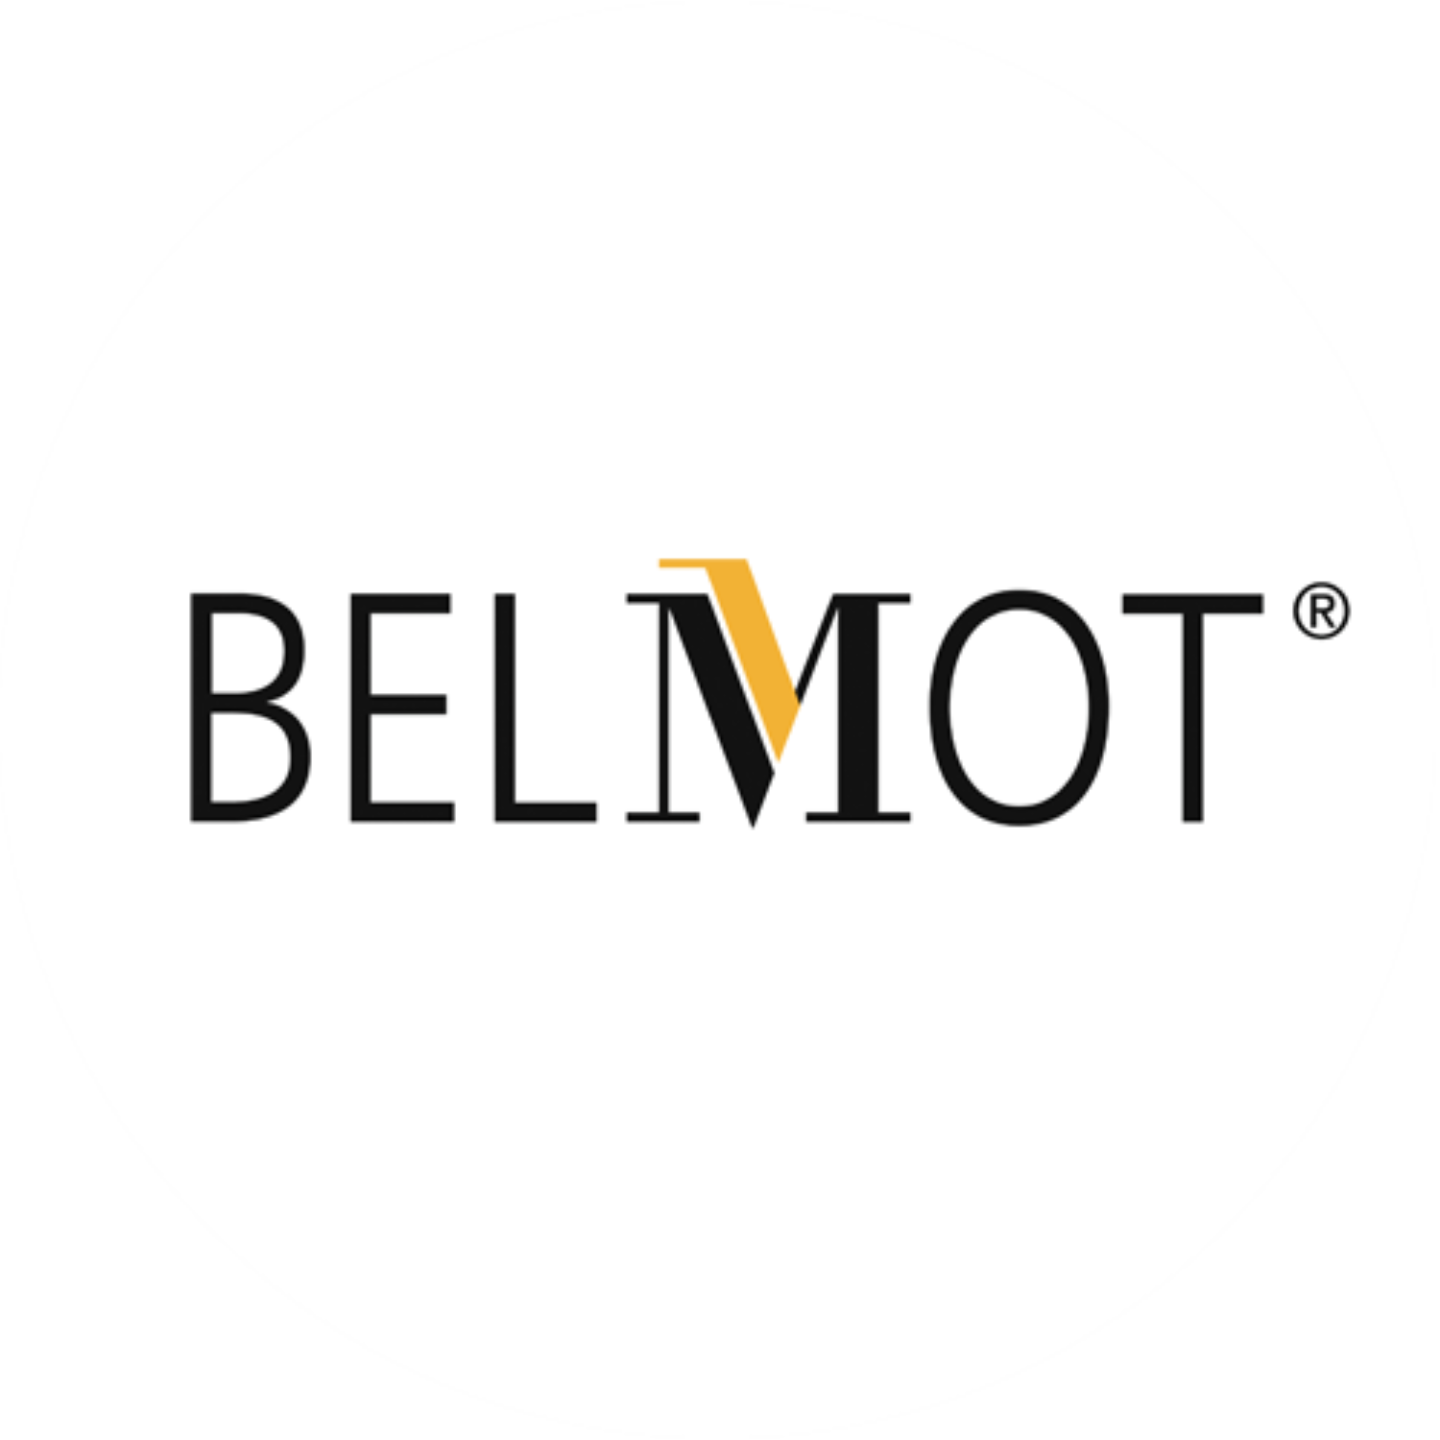 Belmot